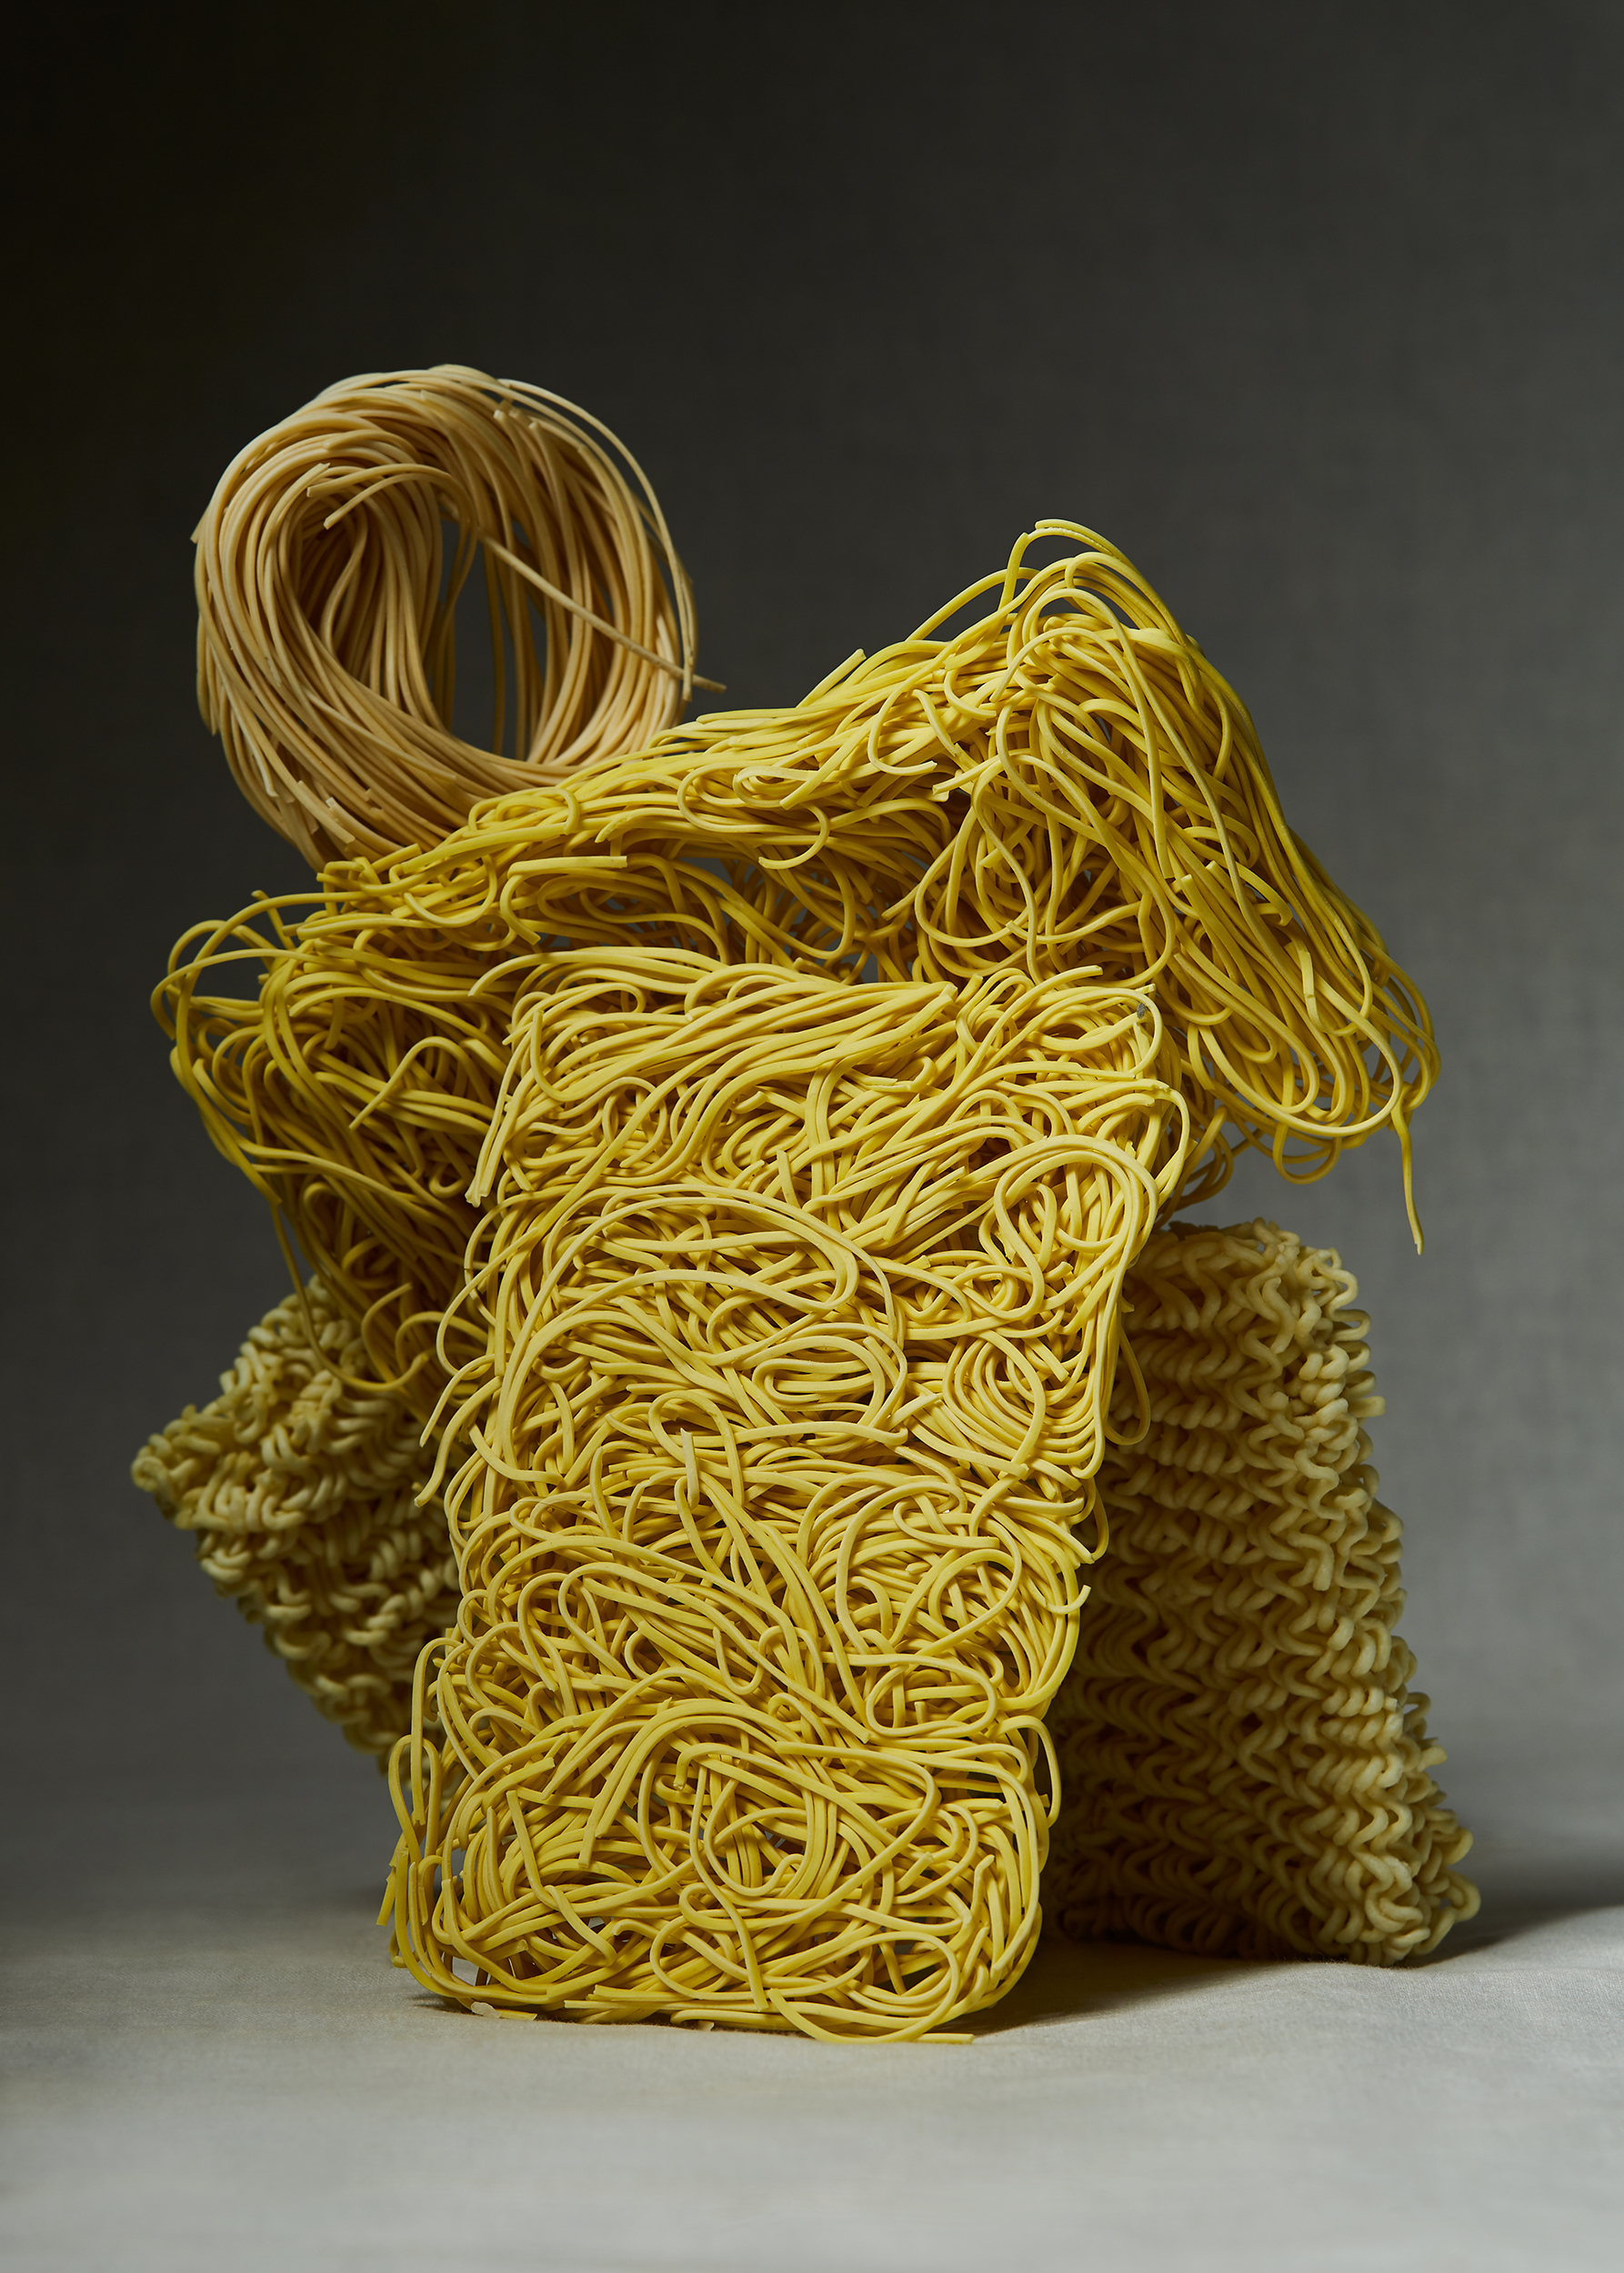 Noodle_Sculptures_1001